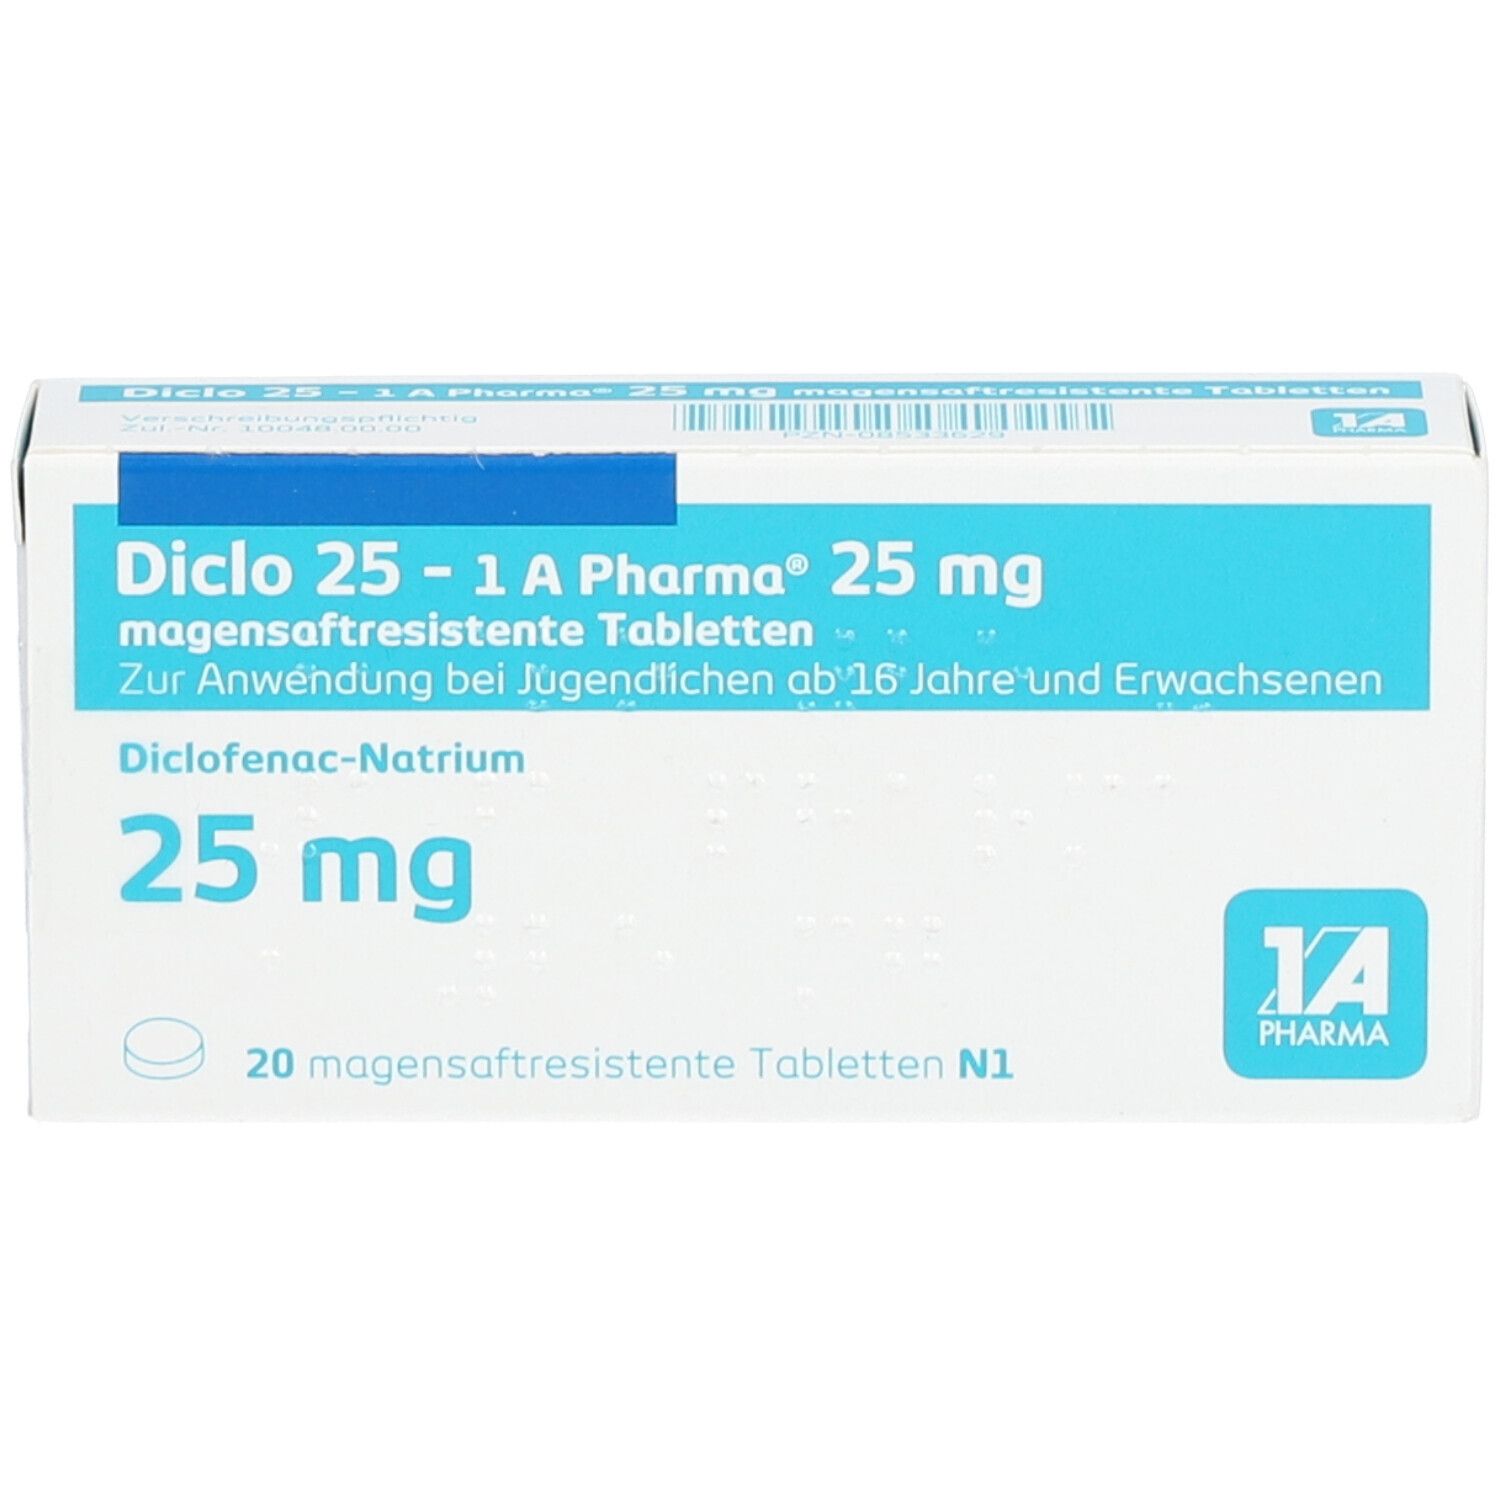 Diclo 25 - 1 A Pharma®